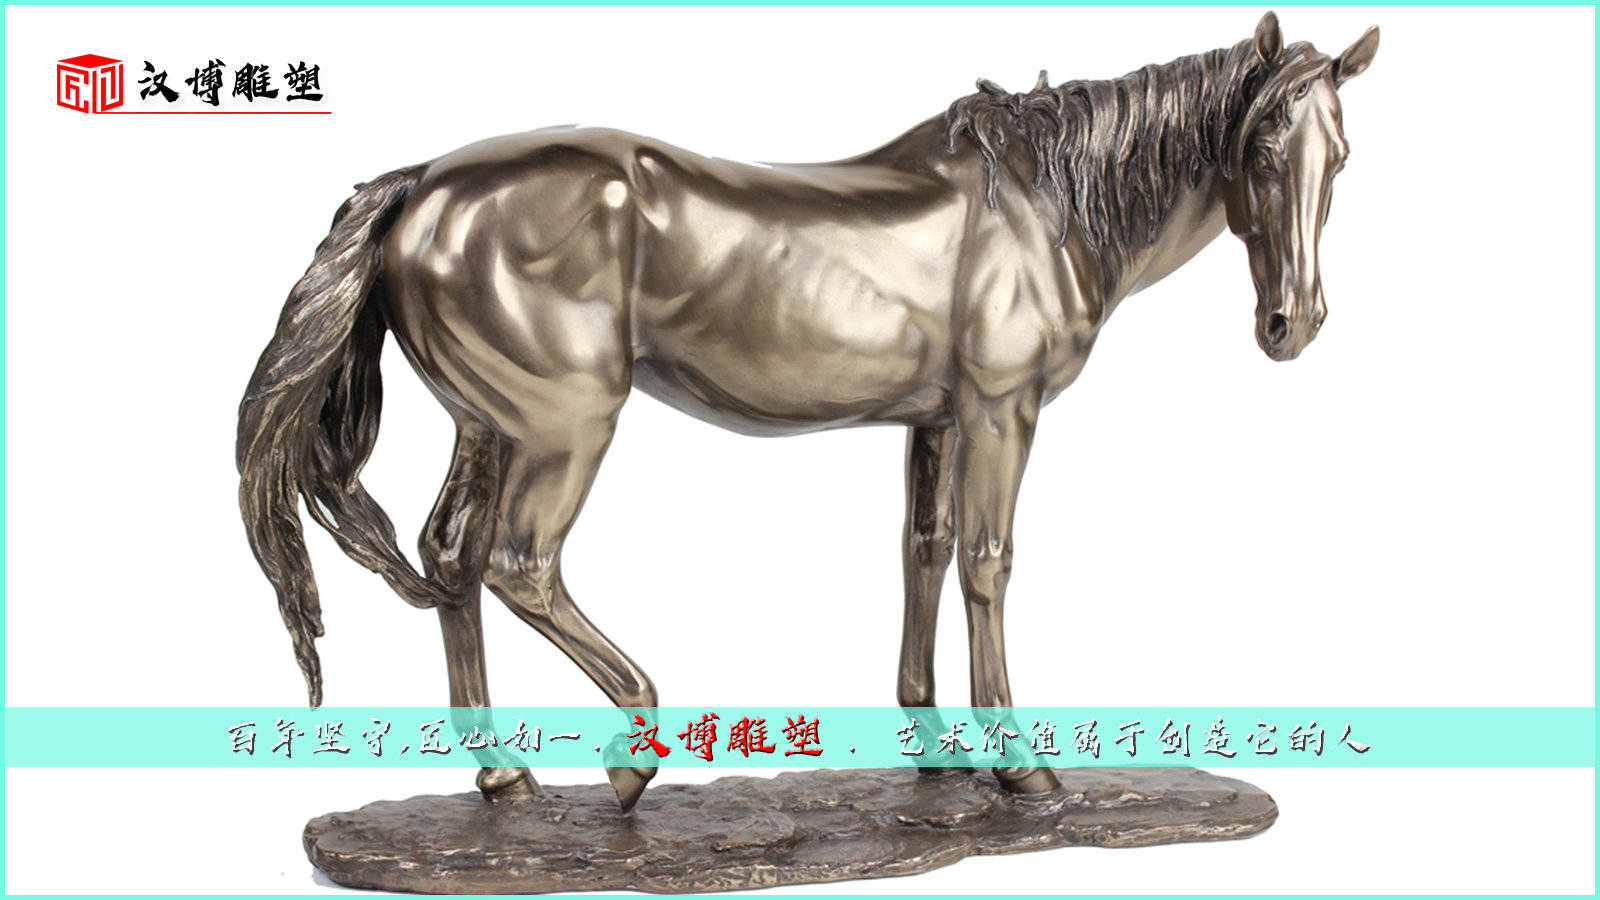 马文化主题雕塑,与马相关的历史文化